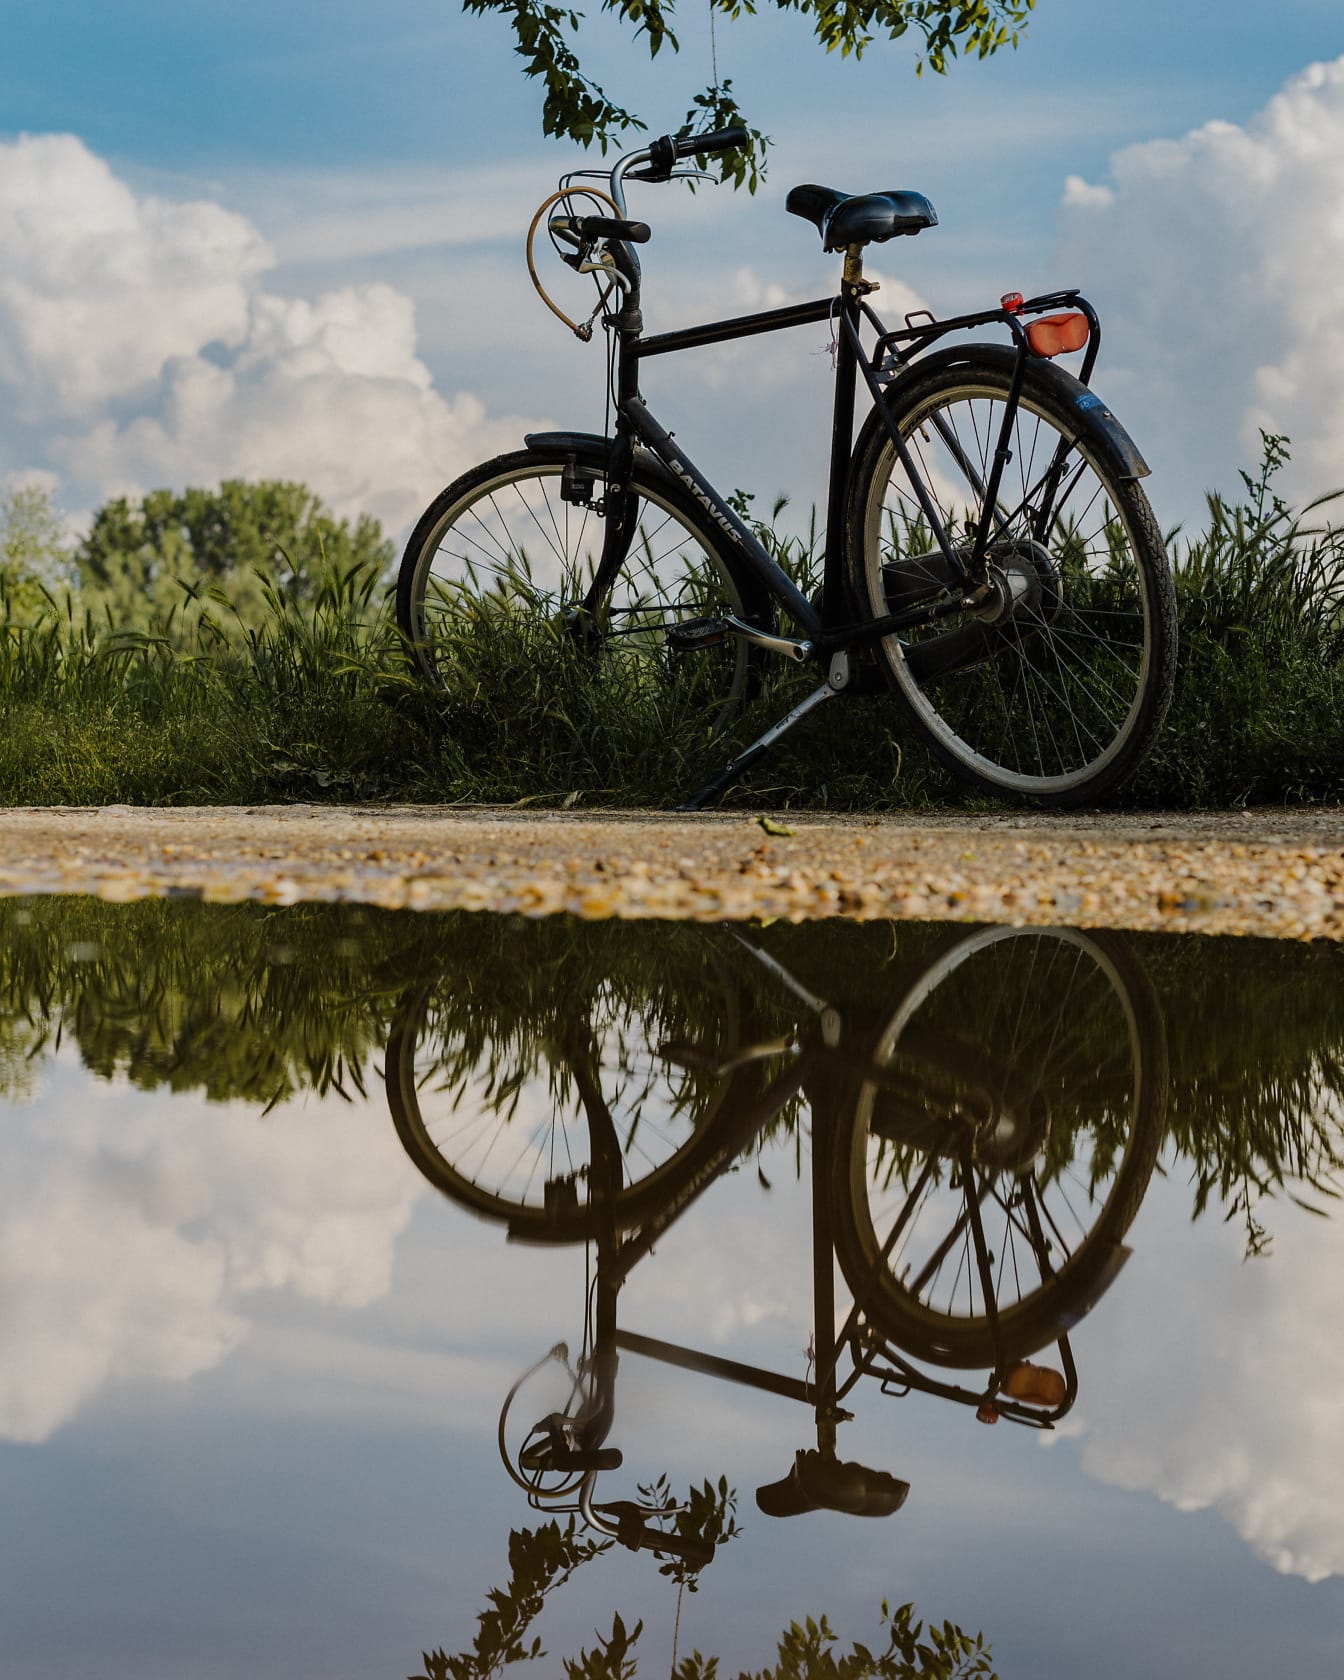 Xe đạp trên đường đất với hình ảnh phản chiếu trên ao